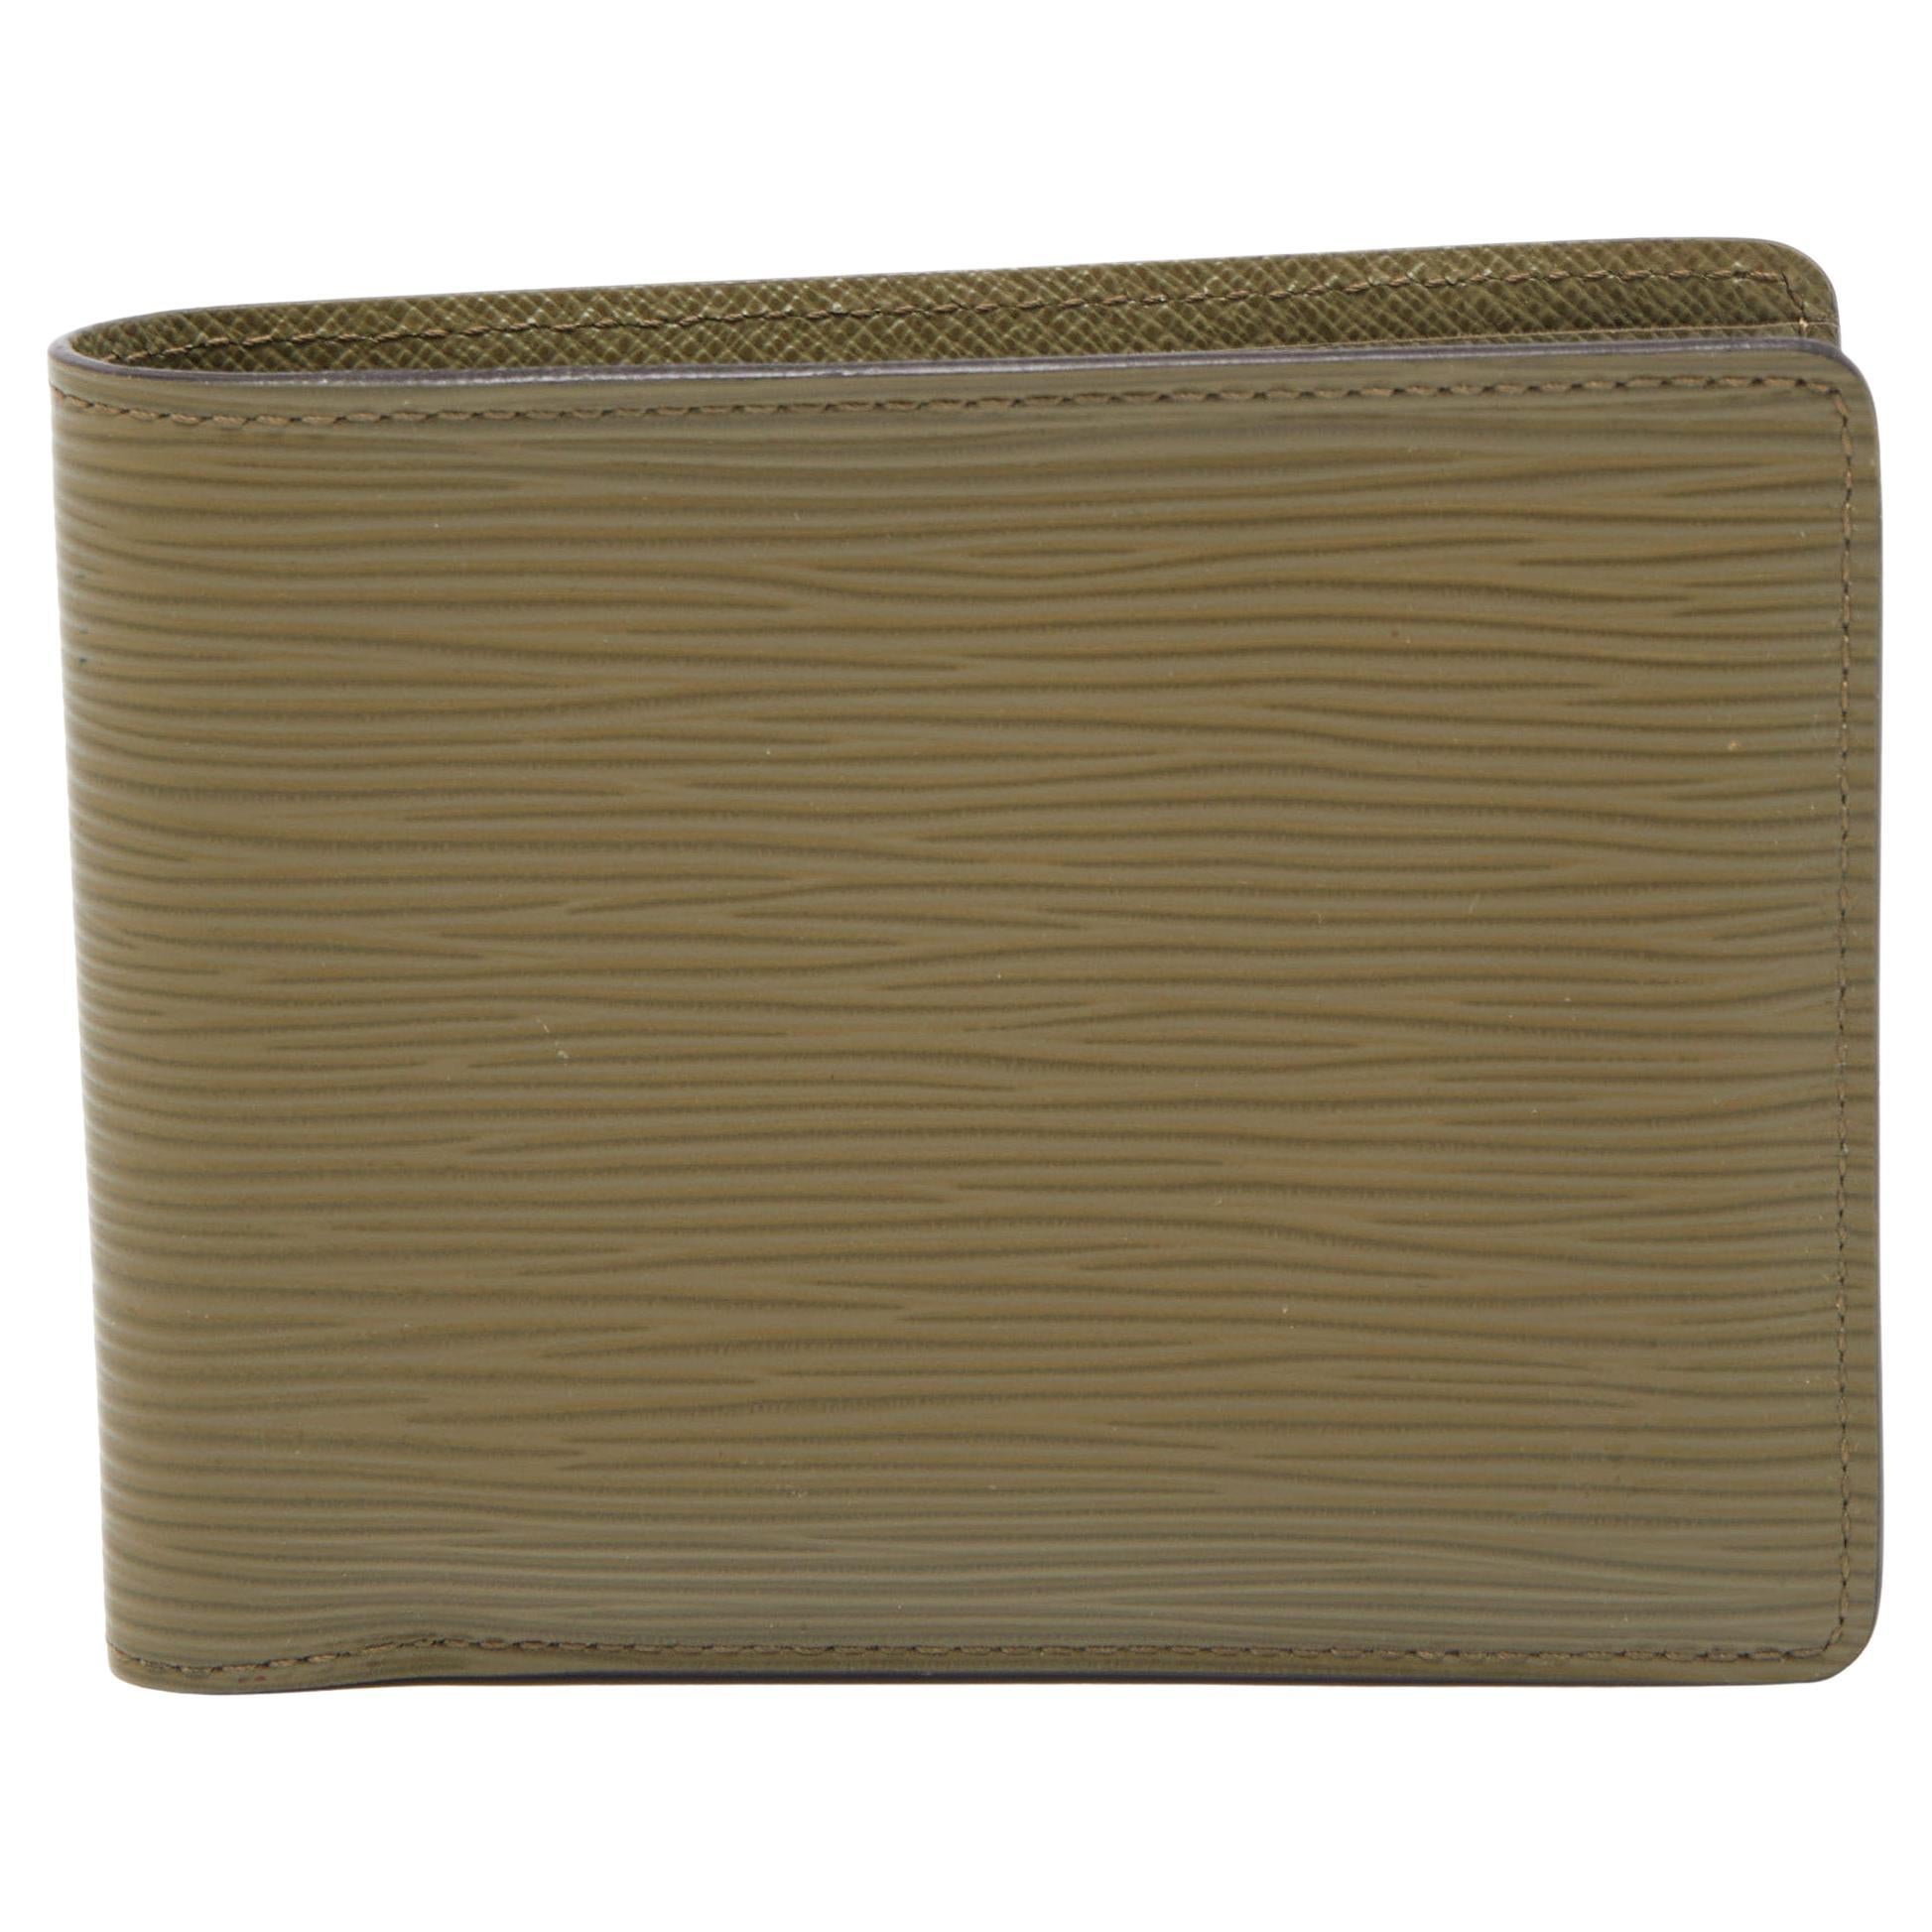 Louis Vuitton Epi Leather Compact Wallet - Neutrals Wallets